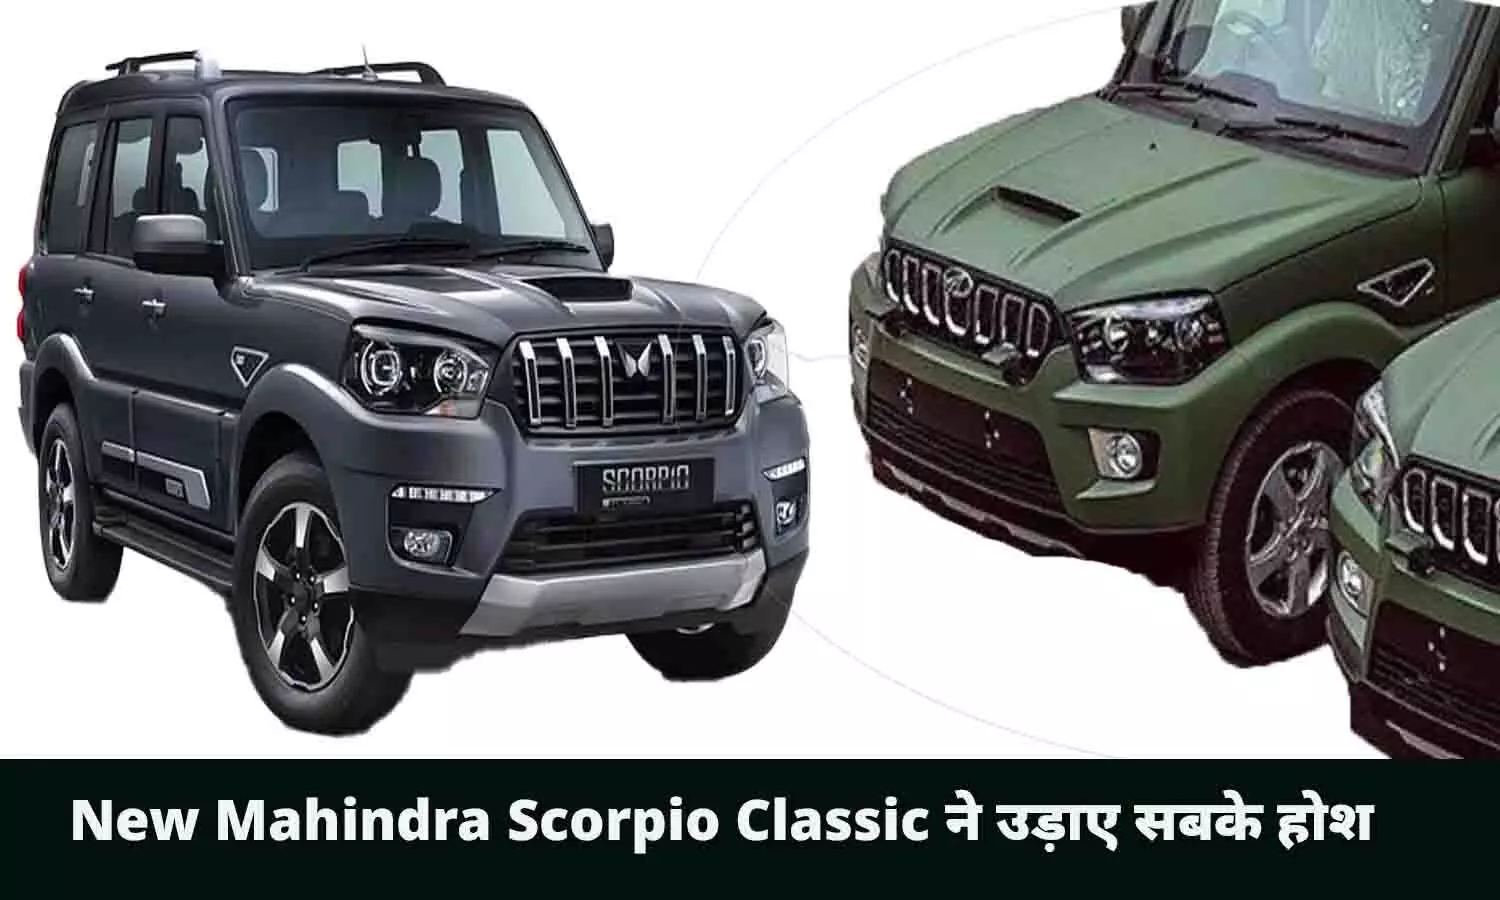 New Mahindra Scorpio Classic ने उड़ाए सबके होश, मार्केट में खरीदने के लिए मची होड़, जाने पूरी वजह..